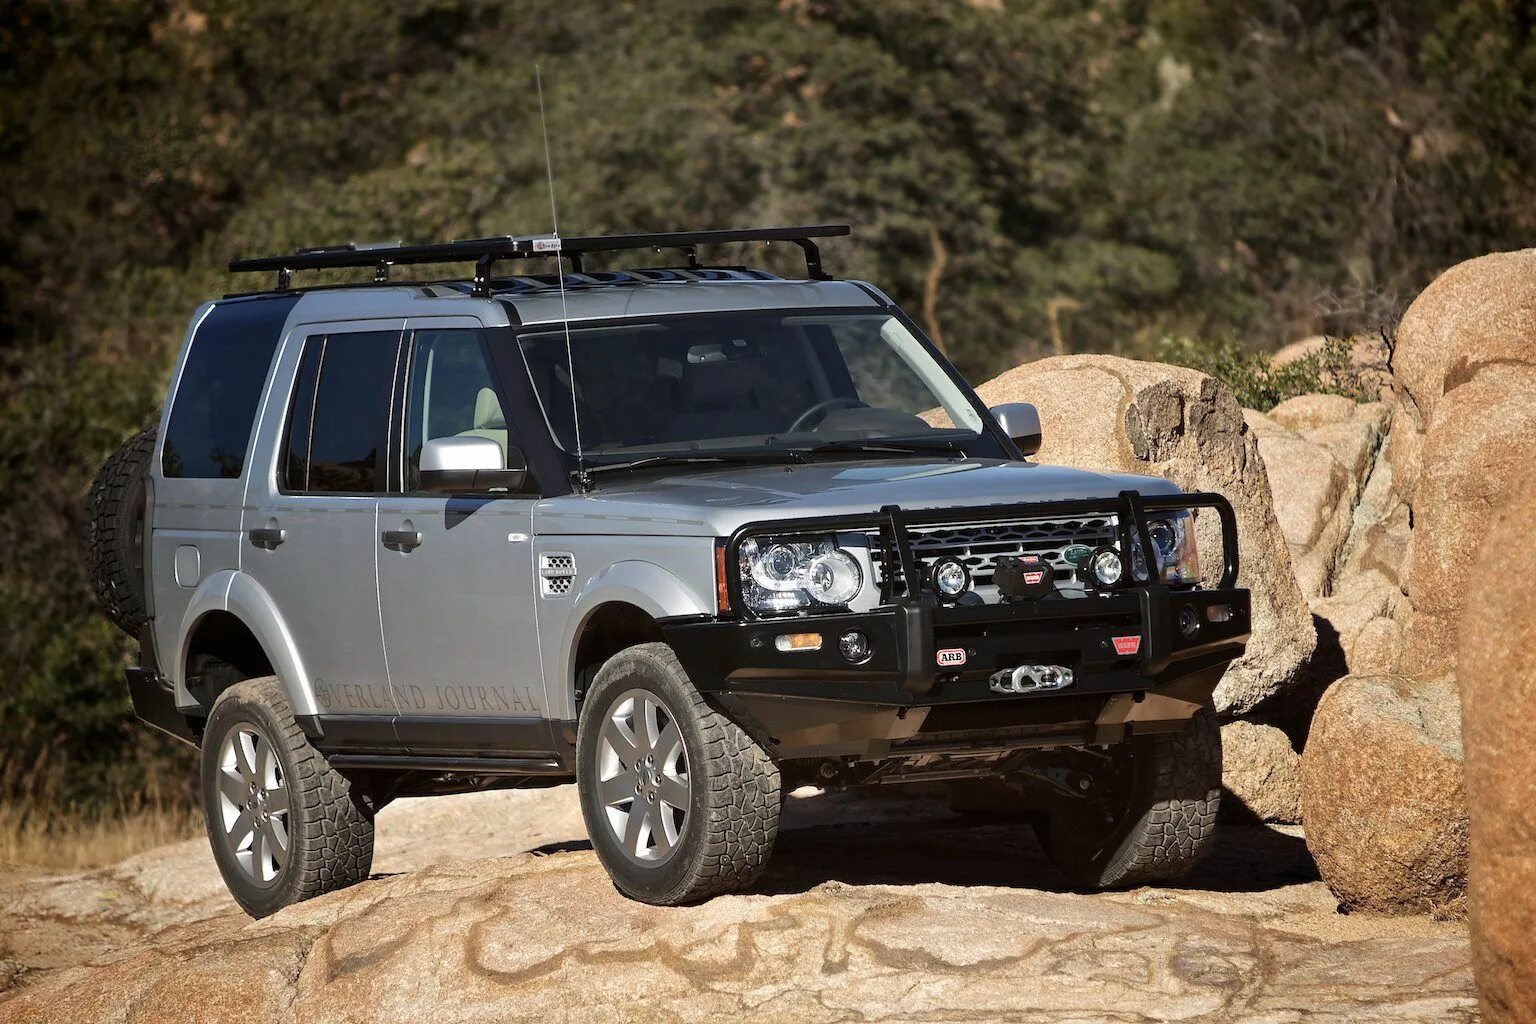 Ленд Ровер Дискавери 4. Ленд Ровер Дискавери 4 Expedition. Land Rover Discovery 3 Expedition. Land Rover lr3/Discovery 3. Купить ленд ровер дискавери москва